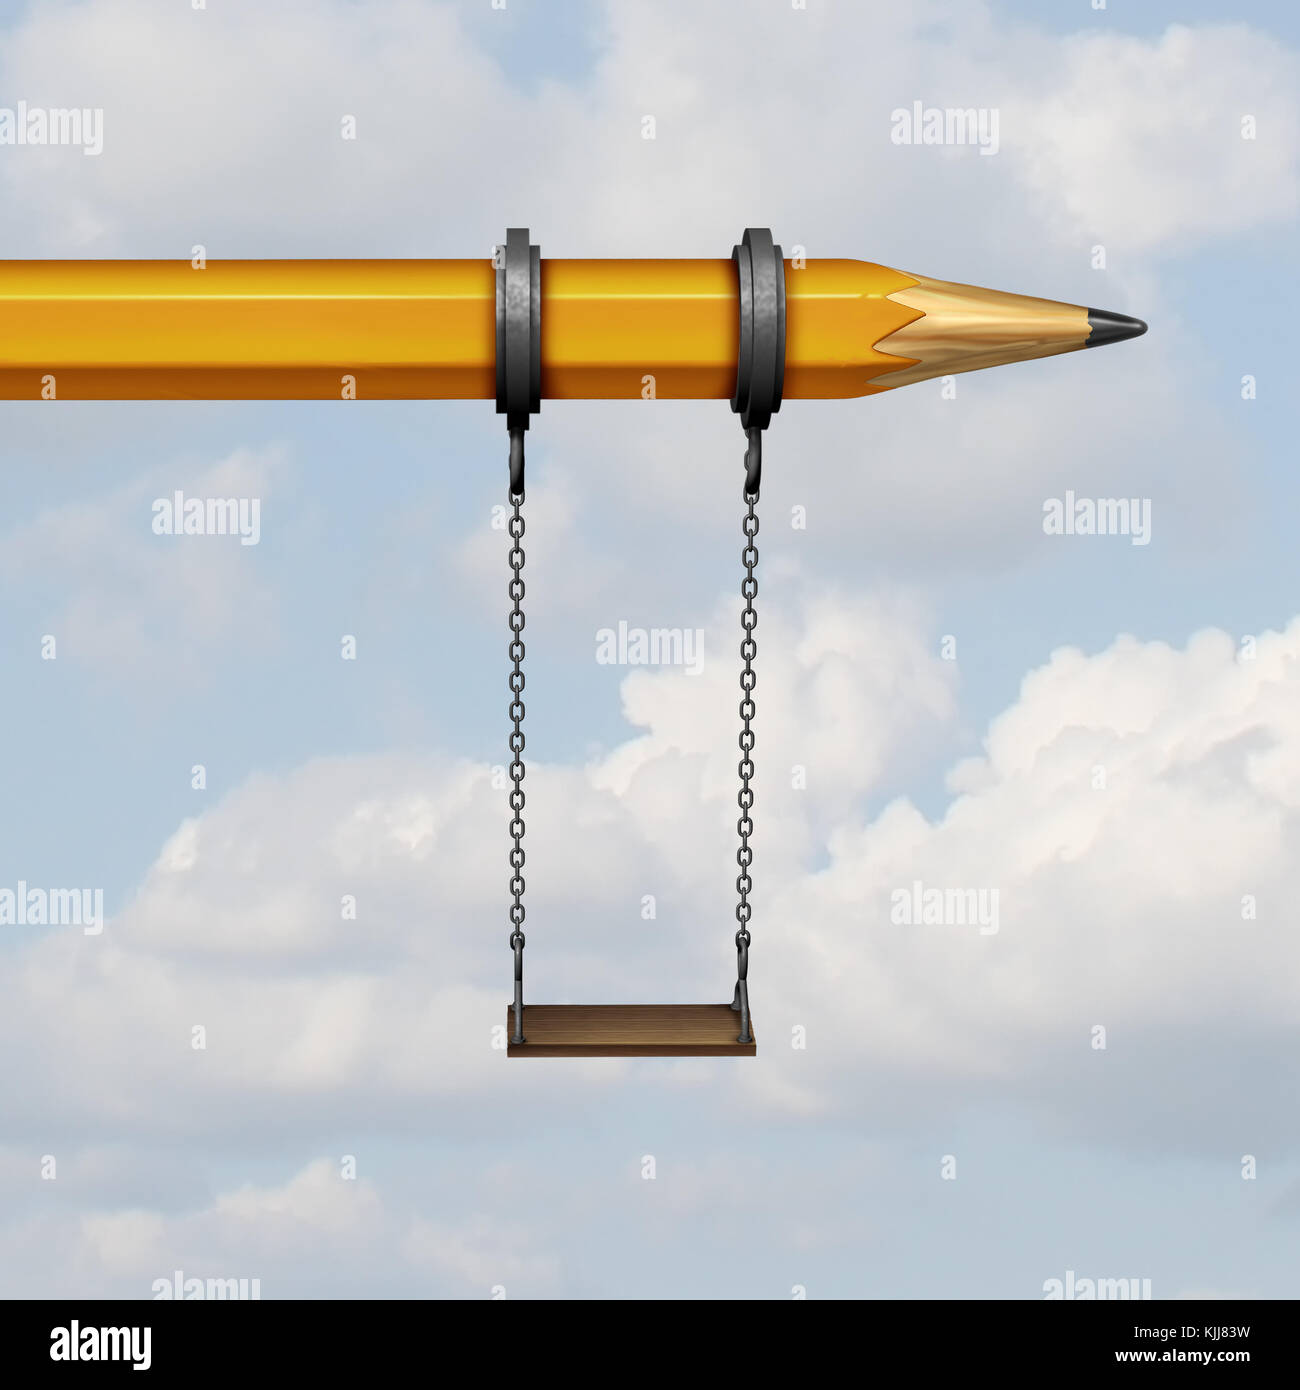 Lernen und Bildung in der Kindheit Erholung Konzept spielen als Spielplatz Schaukel hängen auf einen Bleistift als 3D-Render. Stockfoto